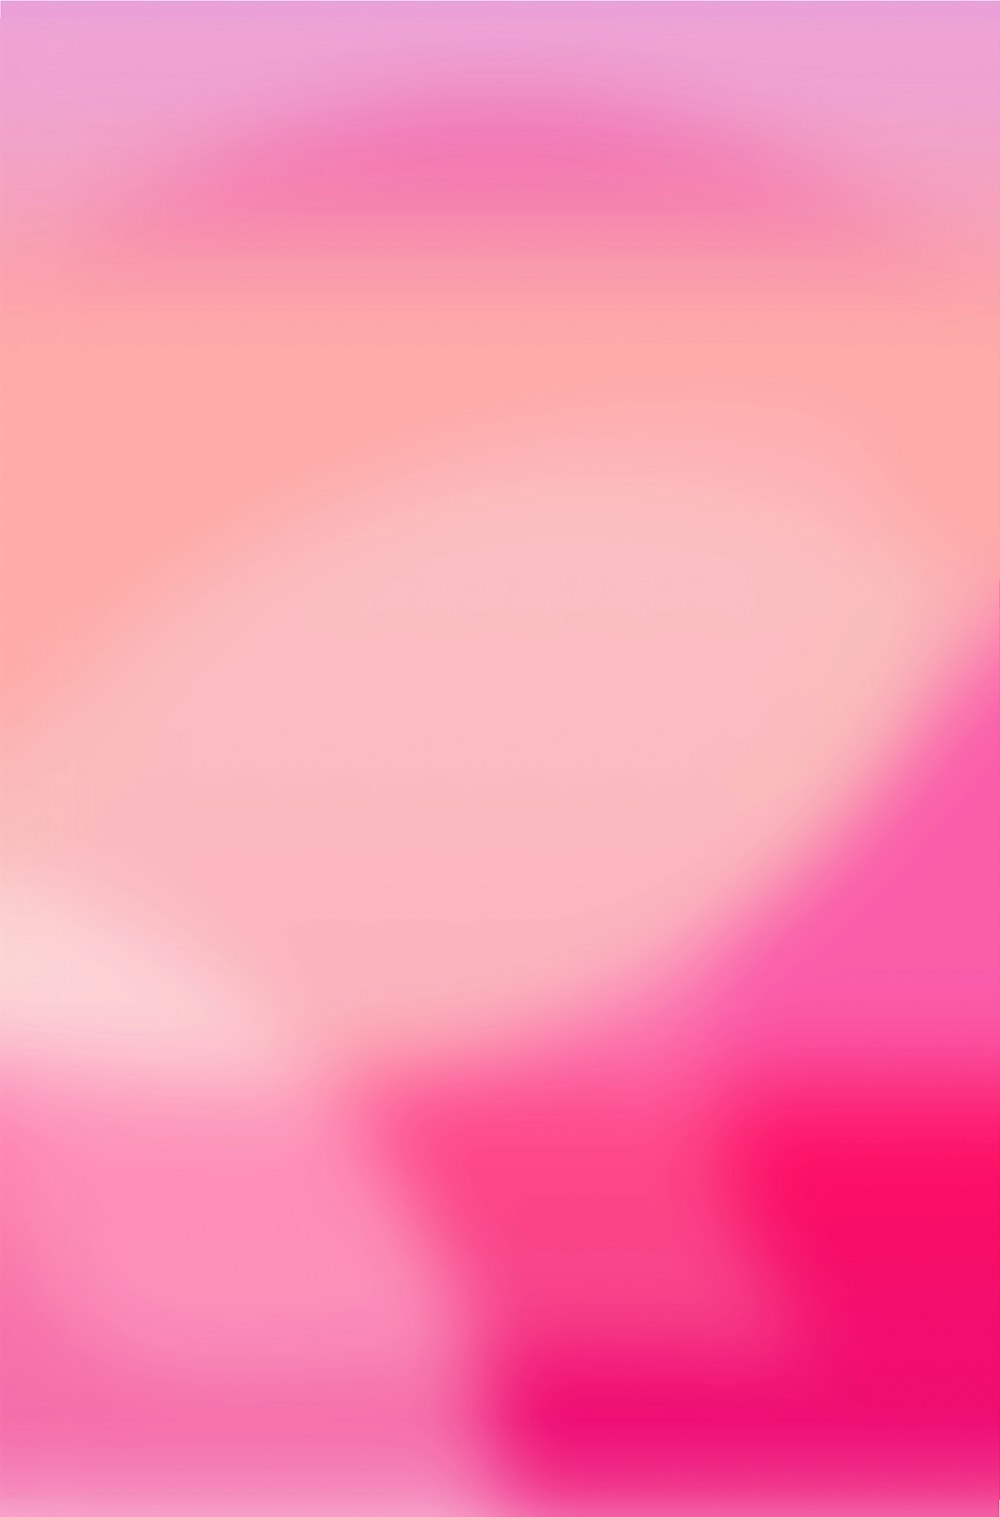 Hình nền Màu Gradient Hồng: Bộ sưu tập hình nền gradient màu hồng sẽ đem đến cho bạn sự đa dạng, tạo ra sự kết hợp tuyệt vời của các sắc thái màu hồng khác nhau. Các hình ảnh gradient tùy chỉnh được thiết kế một cách đặc biệt để phù hợp với điện thoại, máy tính bảng hoặc desktop của bạn.